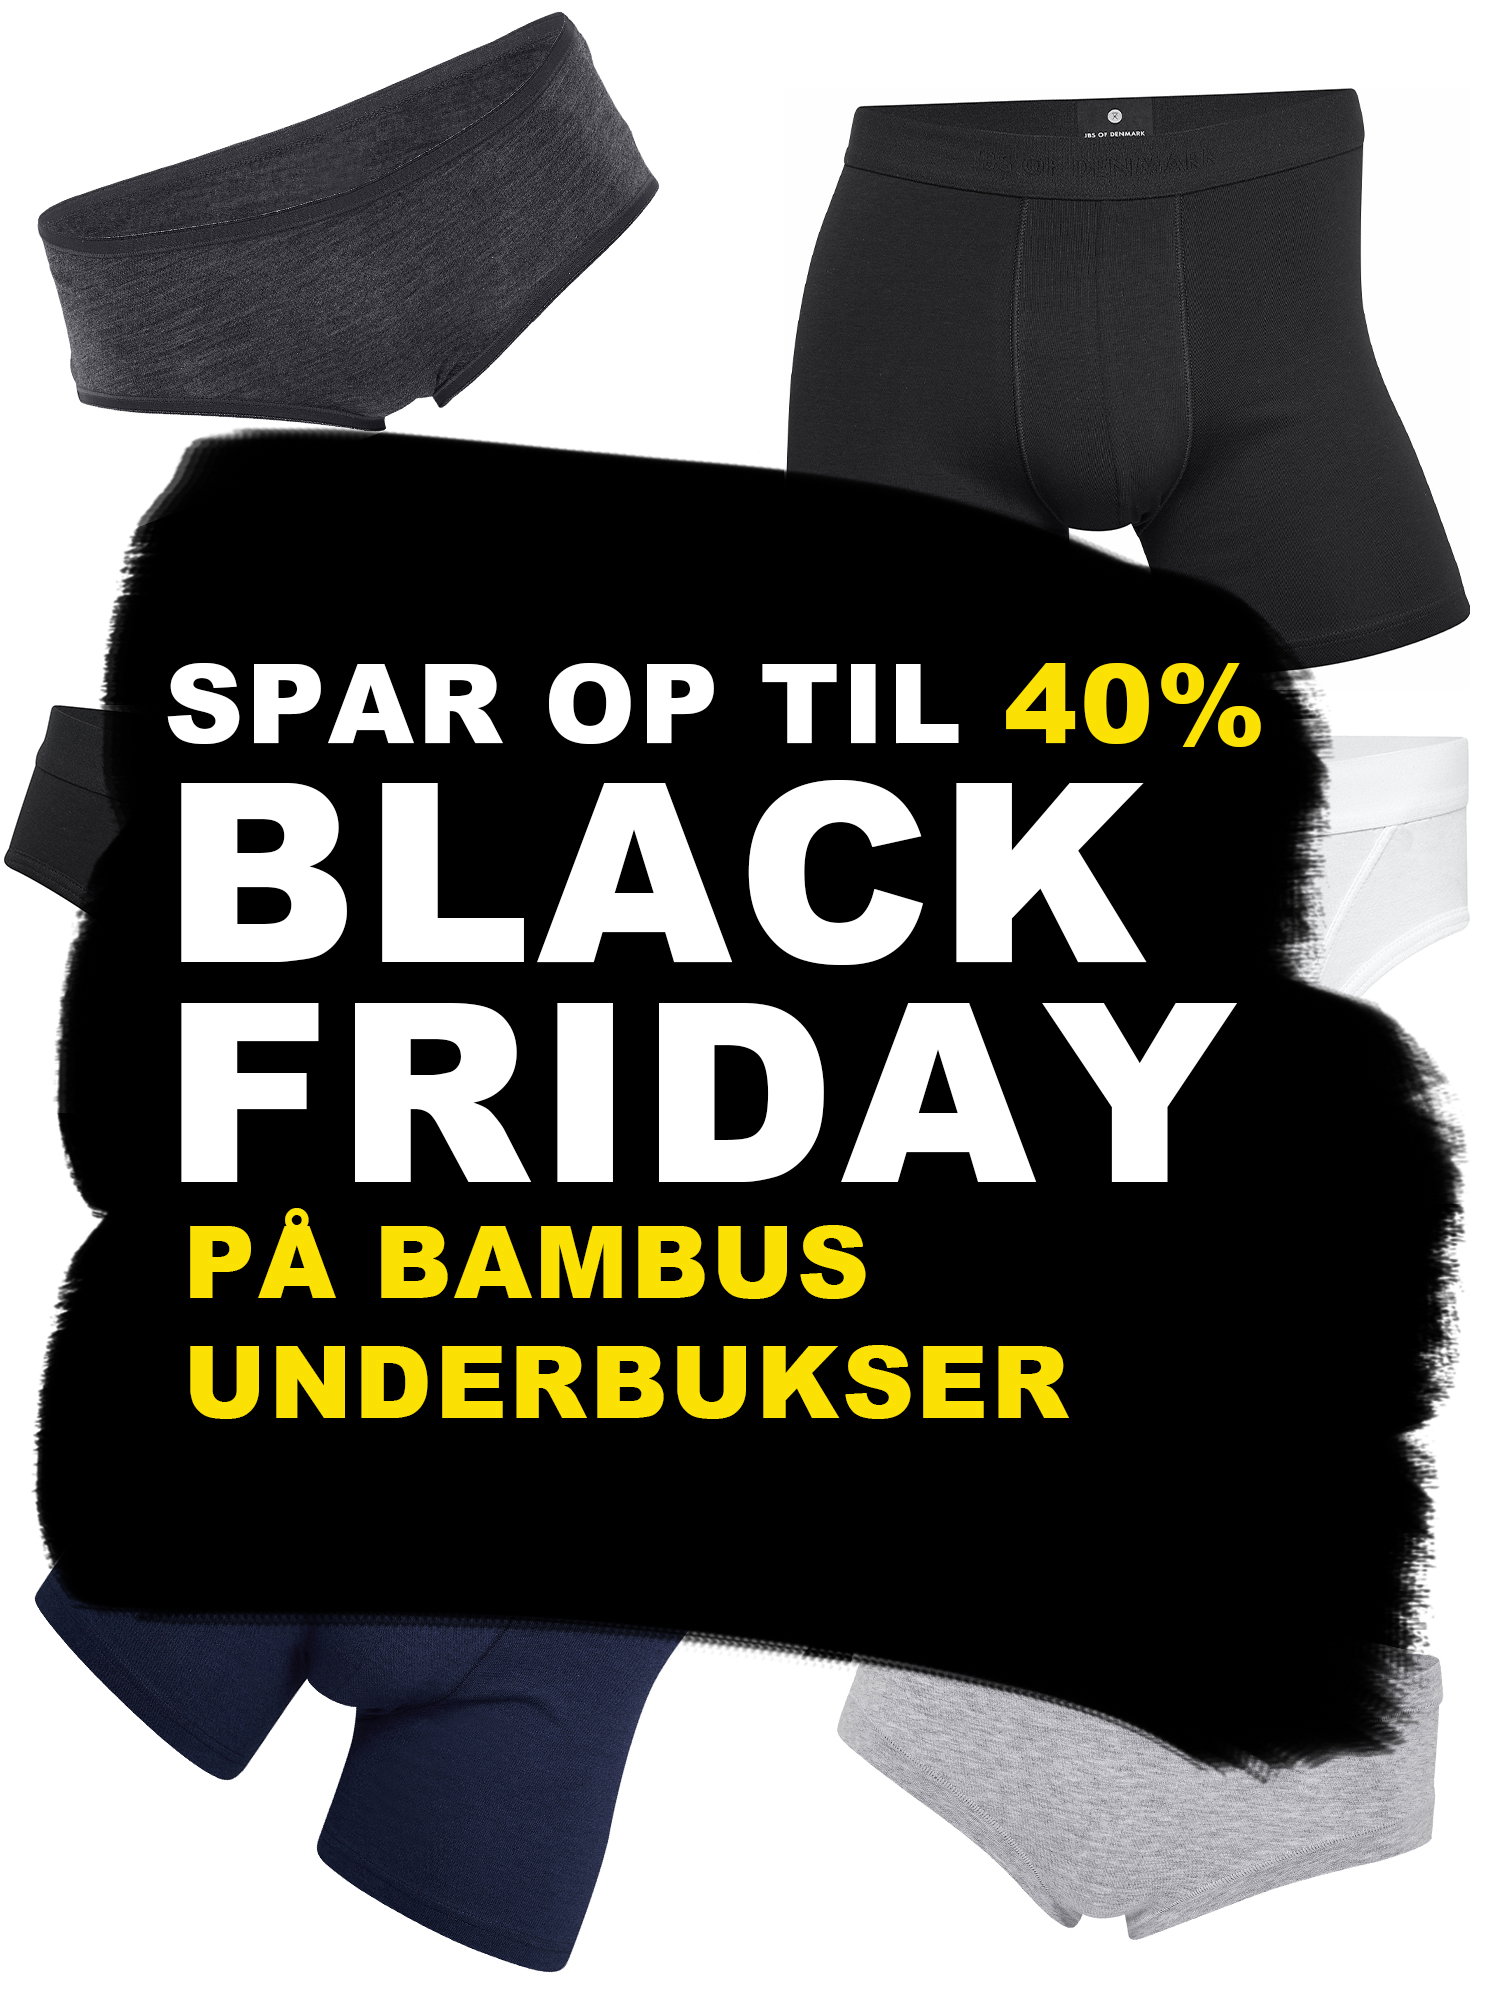 Bambustøj.dk: Black Friday - til 40% 🔥 Milled